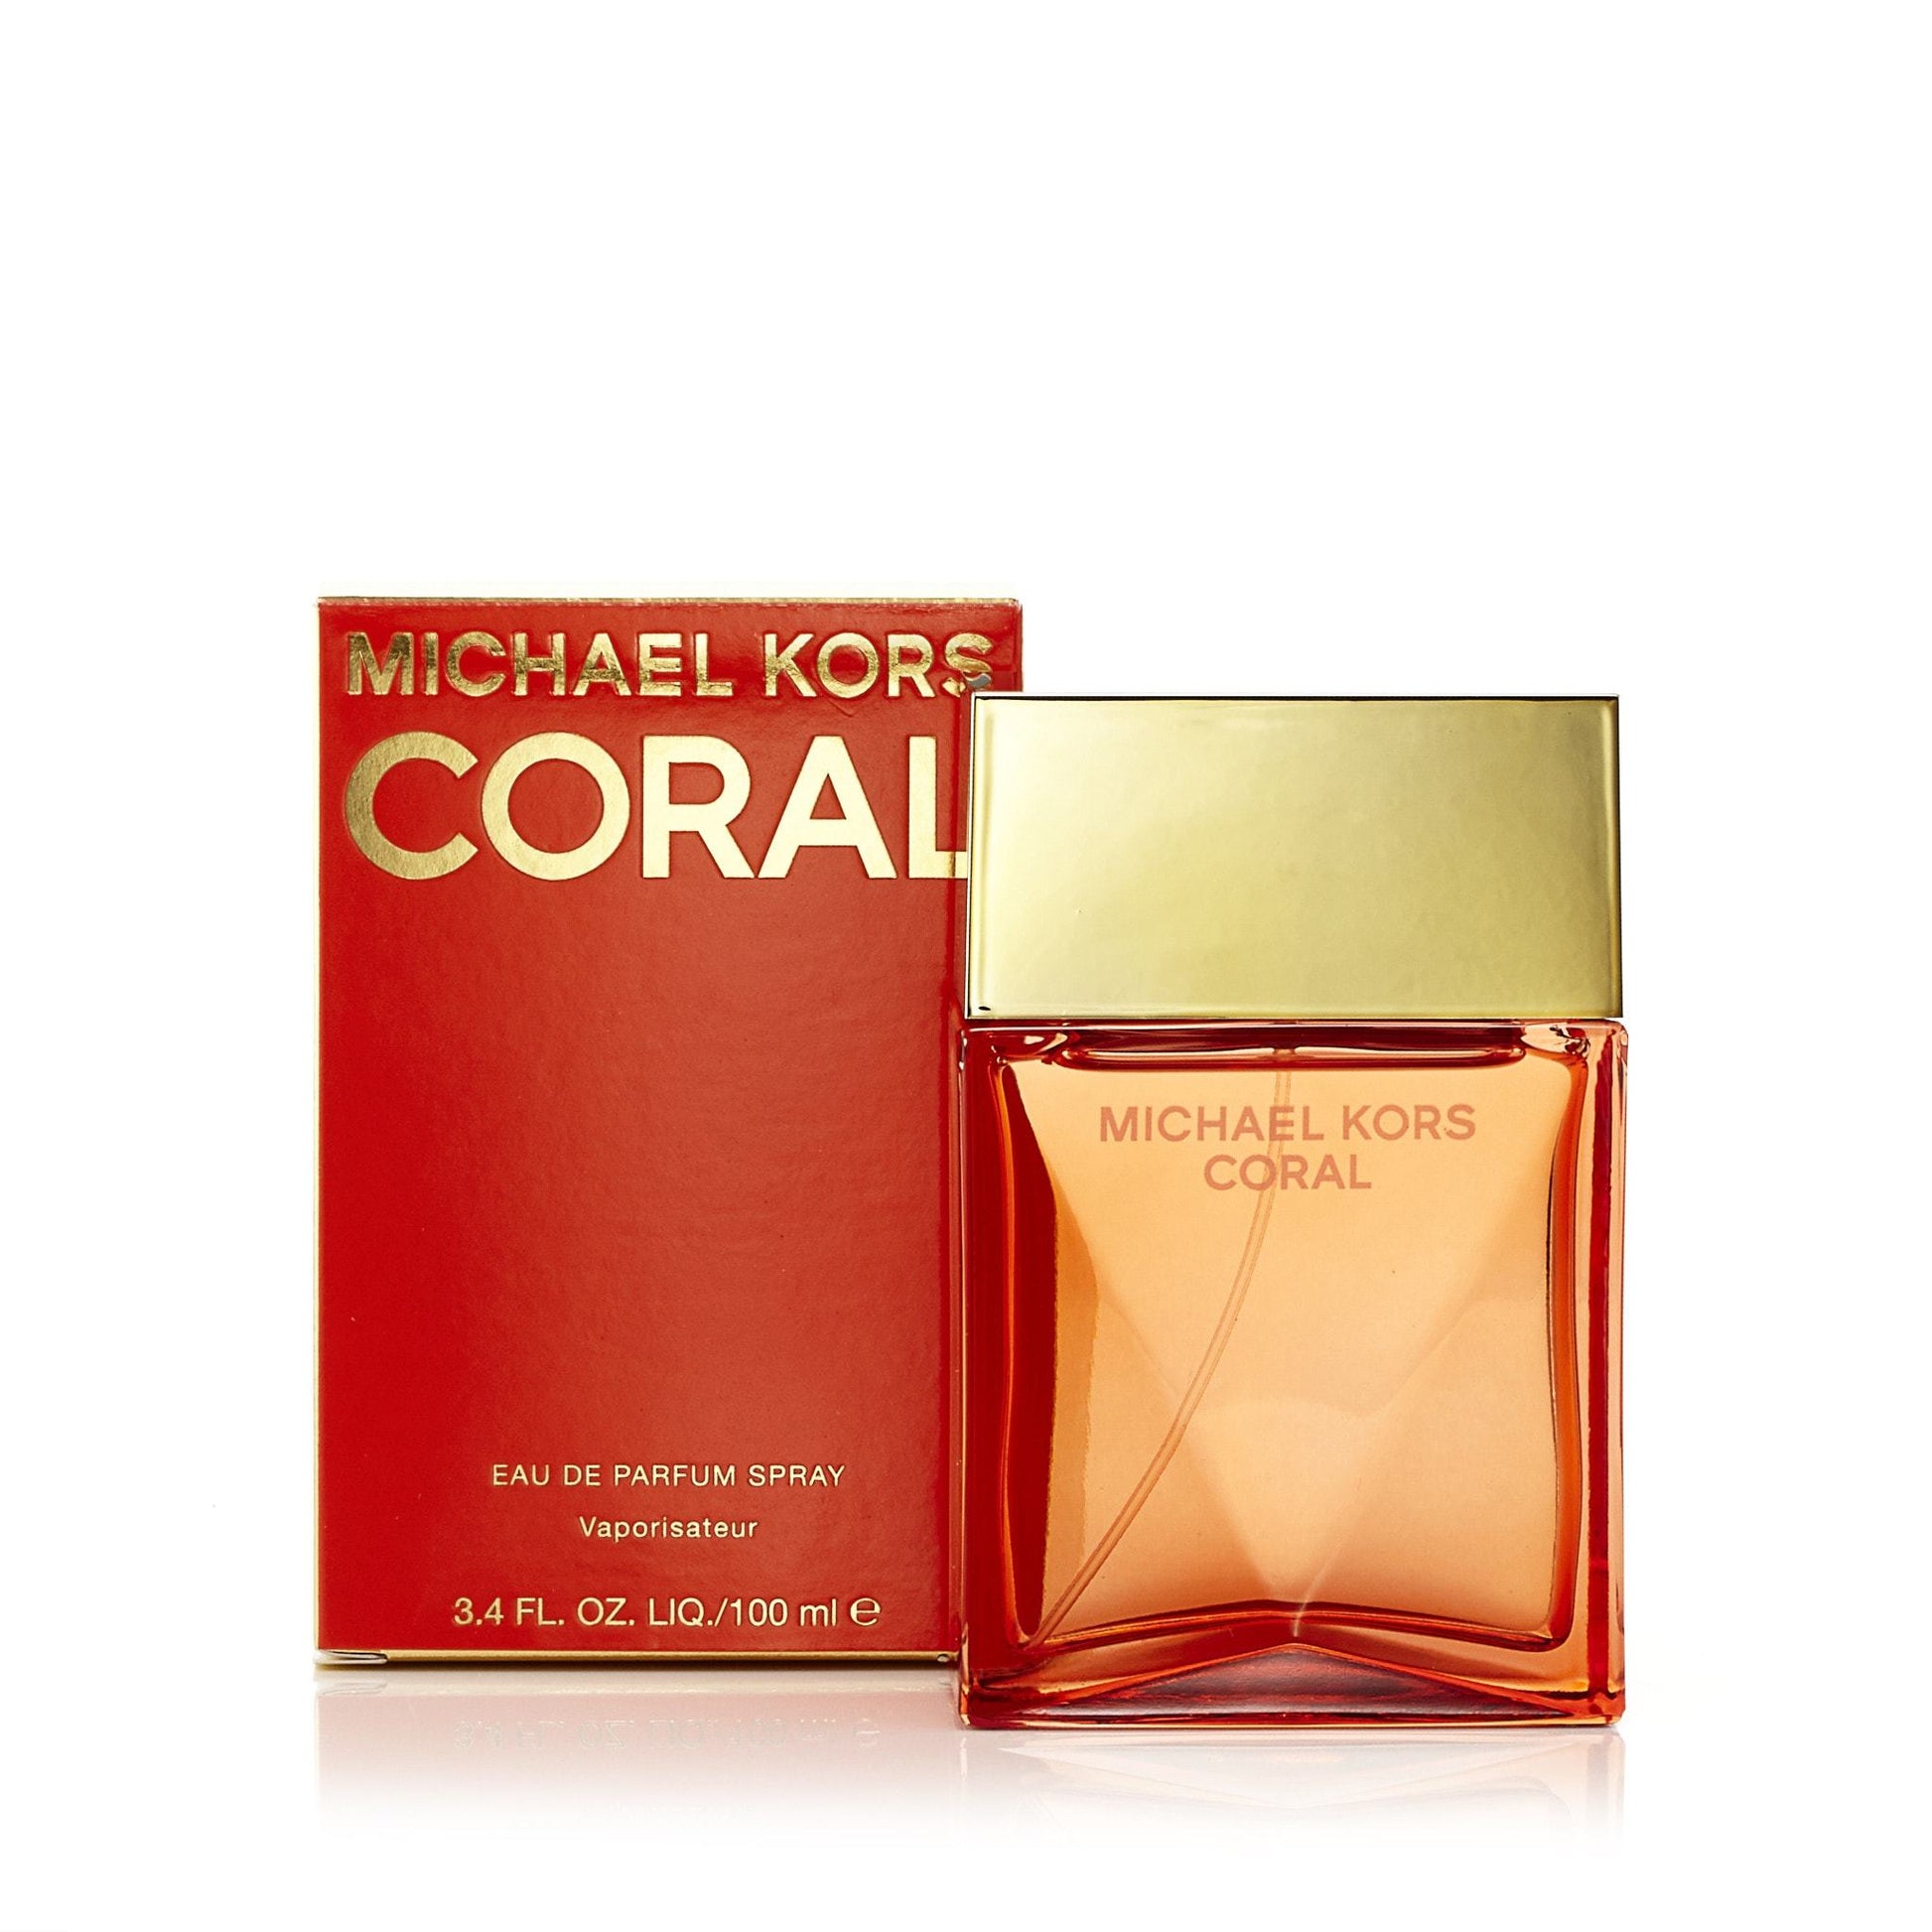 Coral Eau de Parfum Spray for Women by Michael Kors, Product image 4